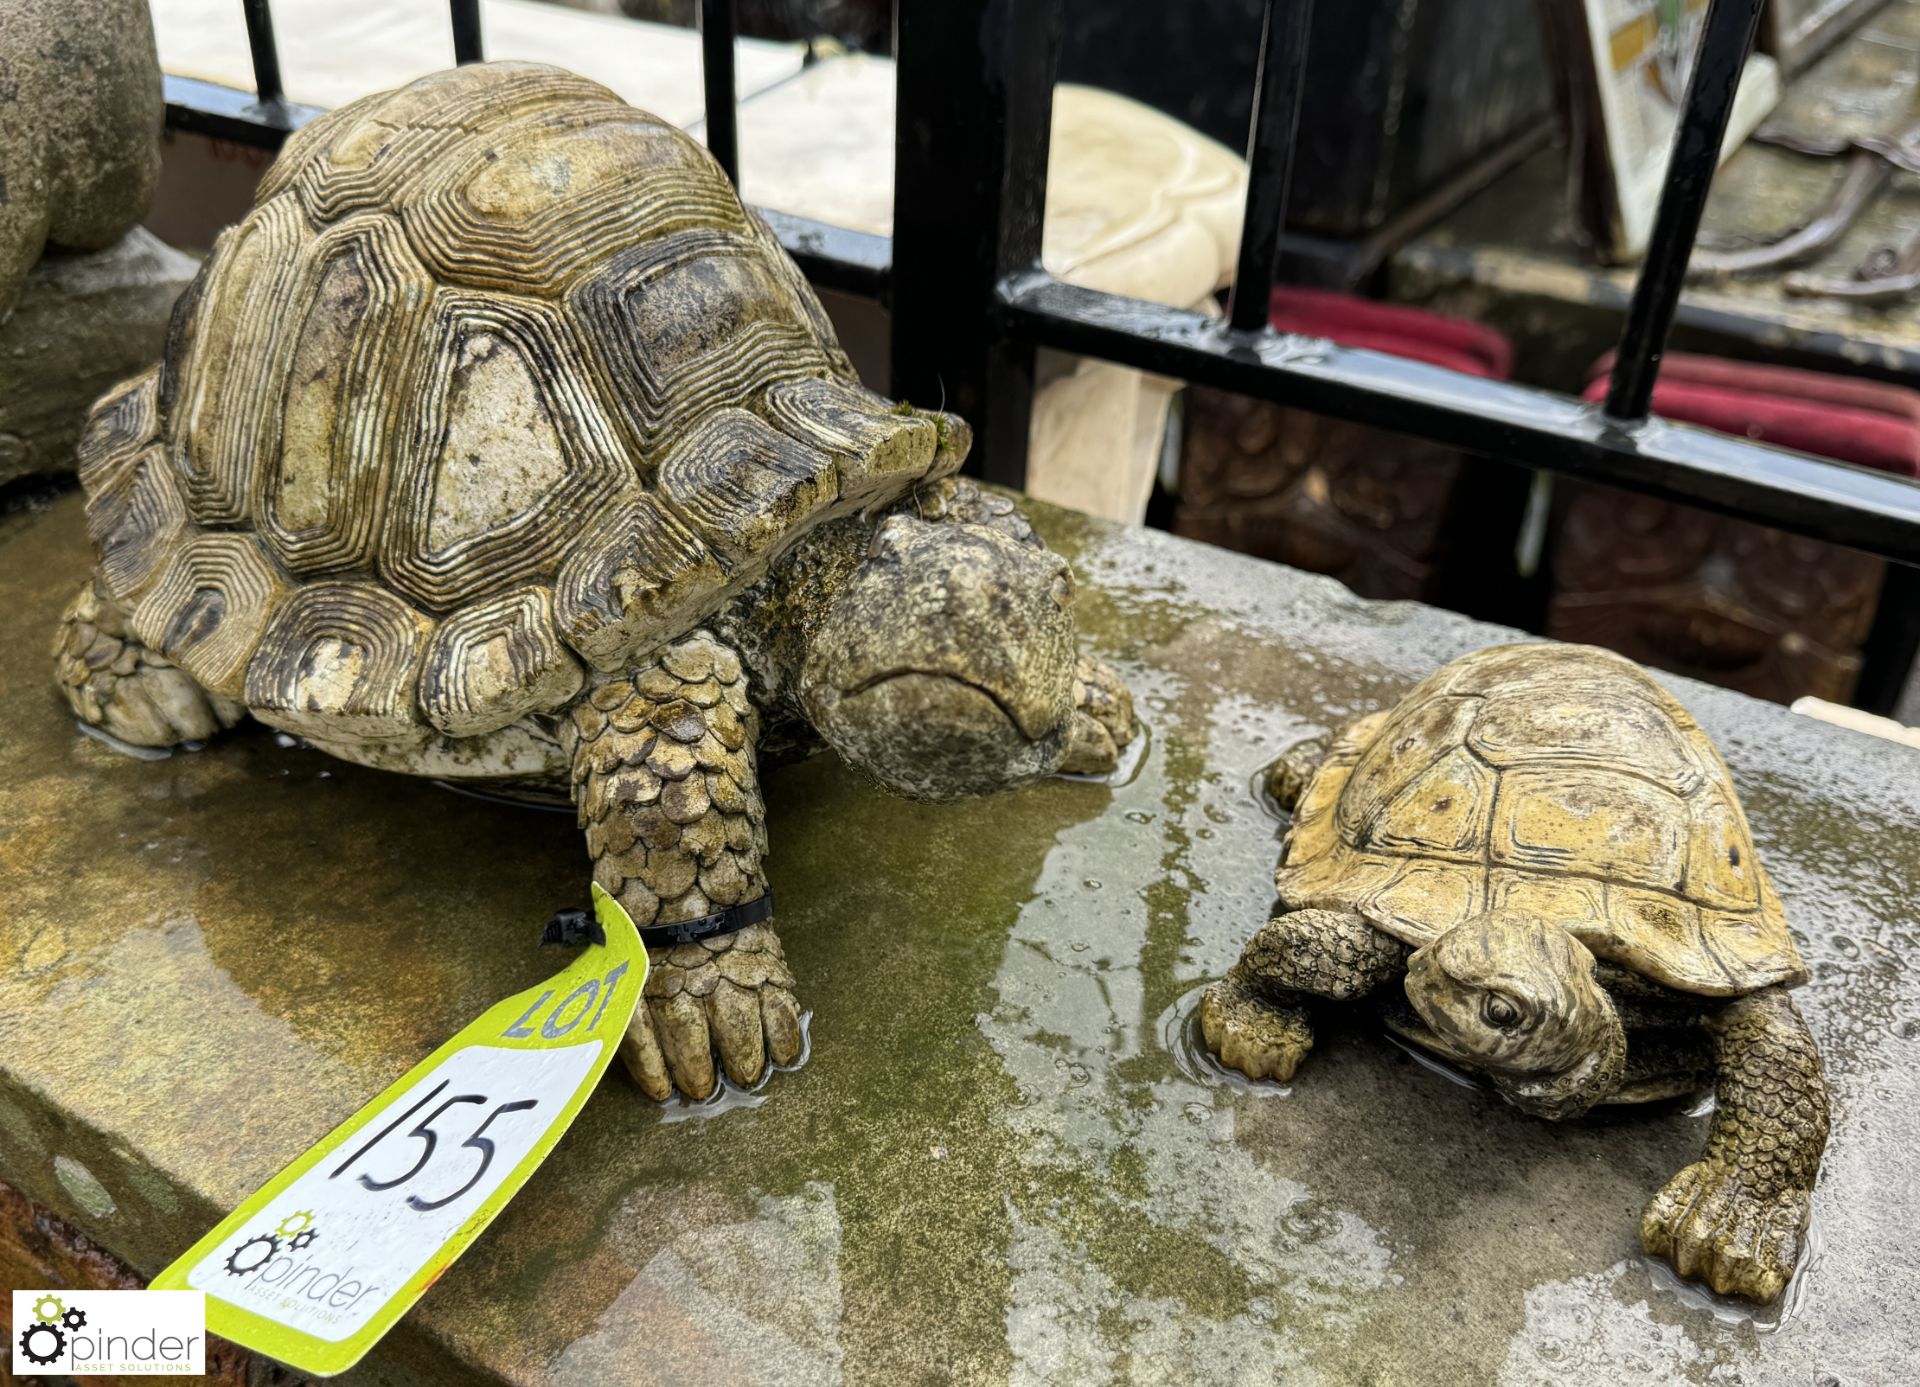 2 decorative tortoises Garden Statues